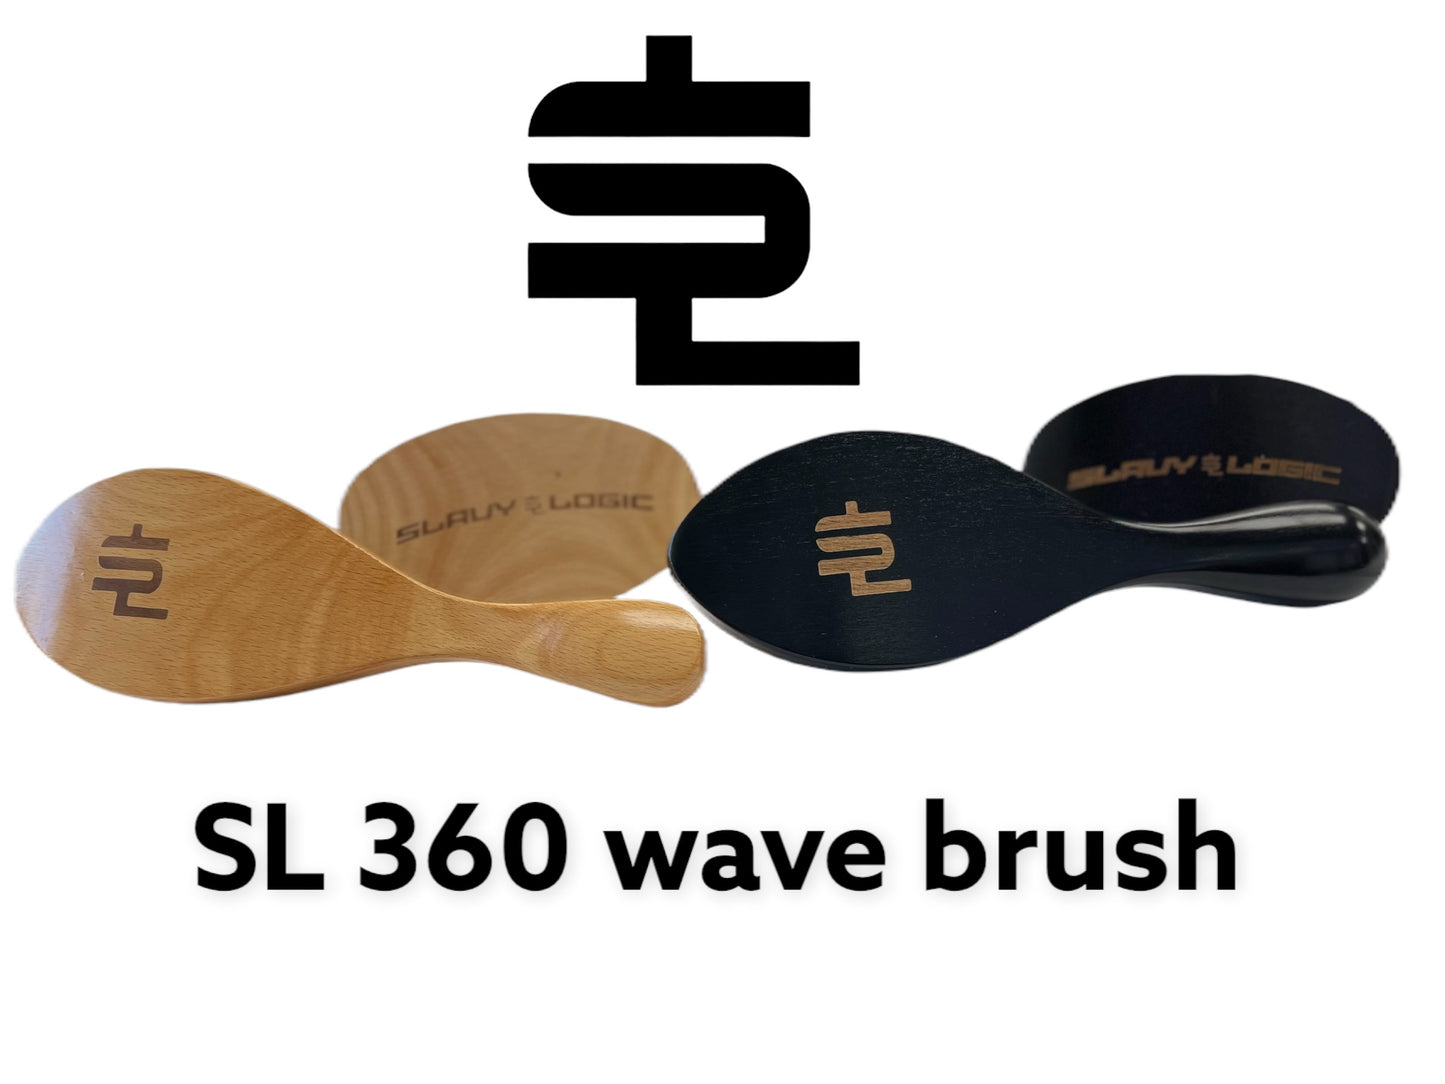 SL 360 wave brush